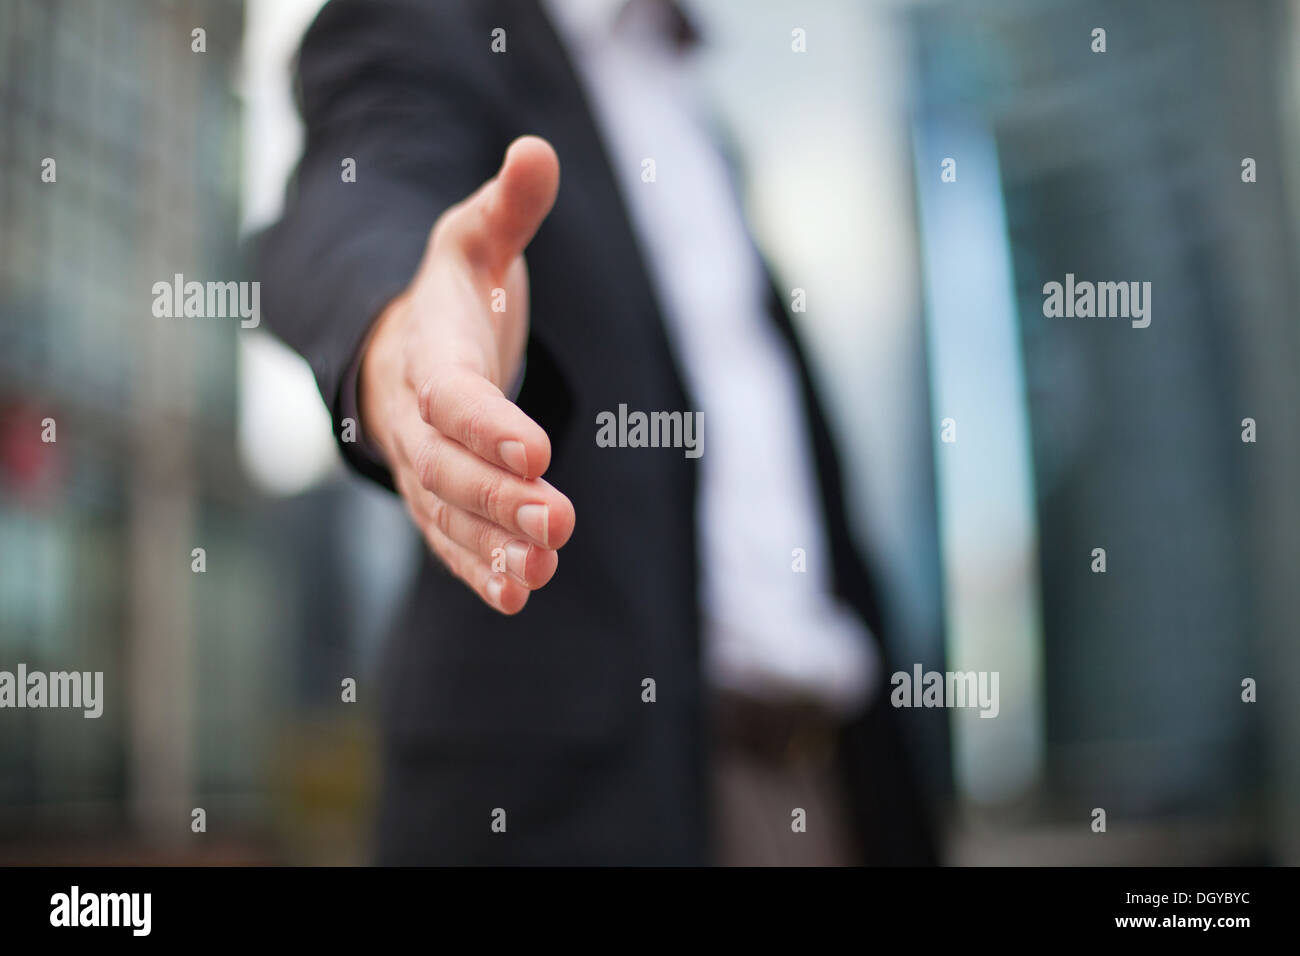 Businessman offrant for handshake Banque D'Images